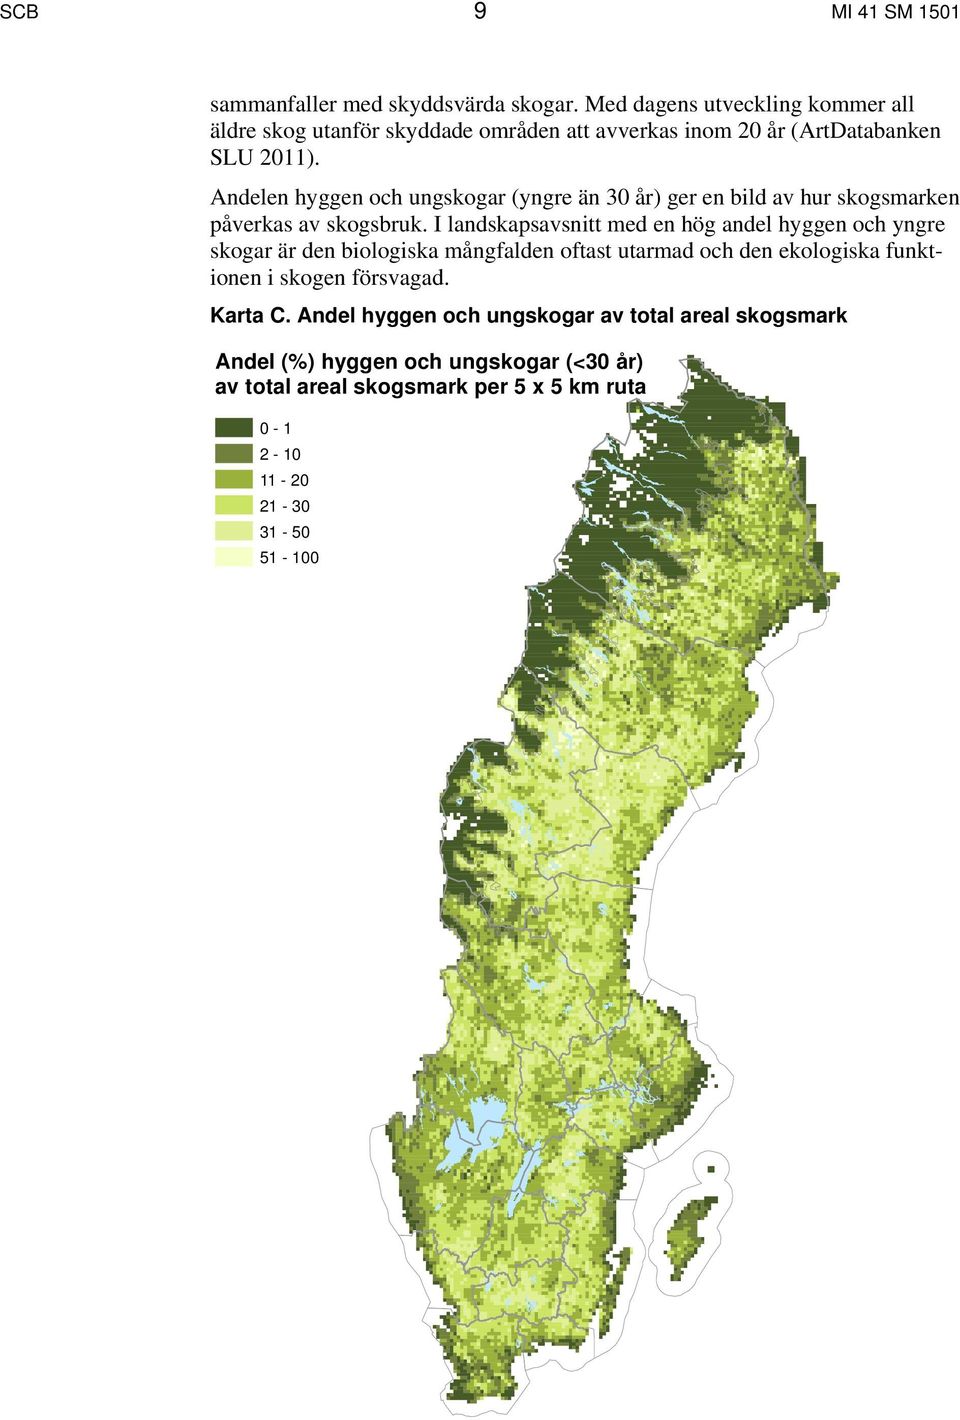 Andelen hyggen och ungskogar (yngre än 30 år) ger en bild av hur skogsmarken påverkas av skogsbruk.